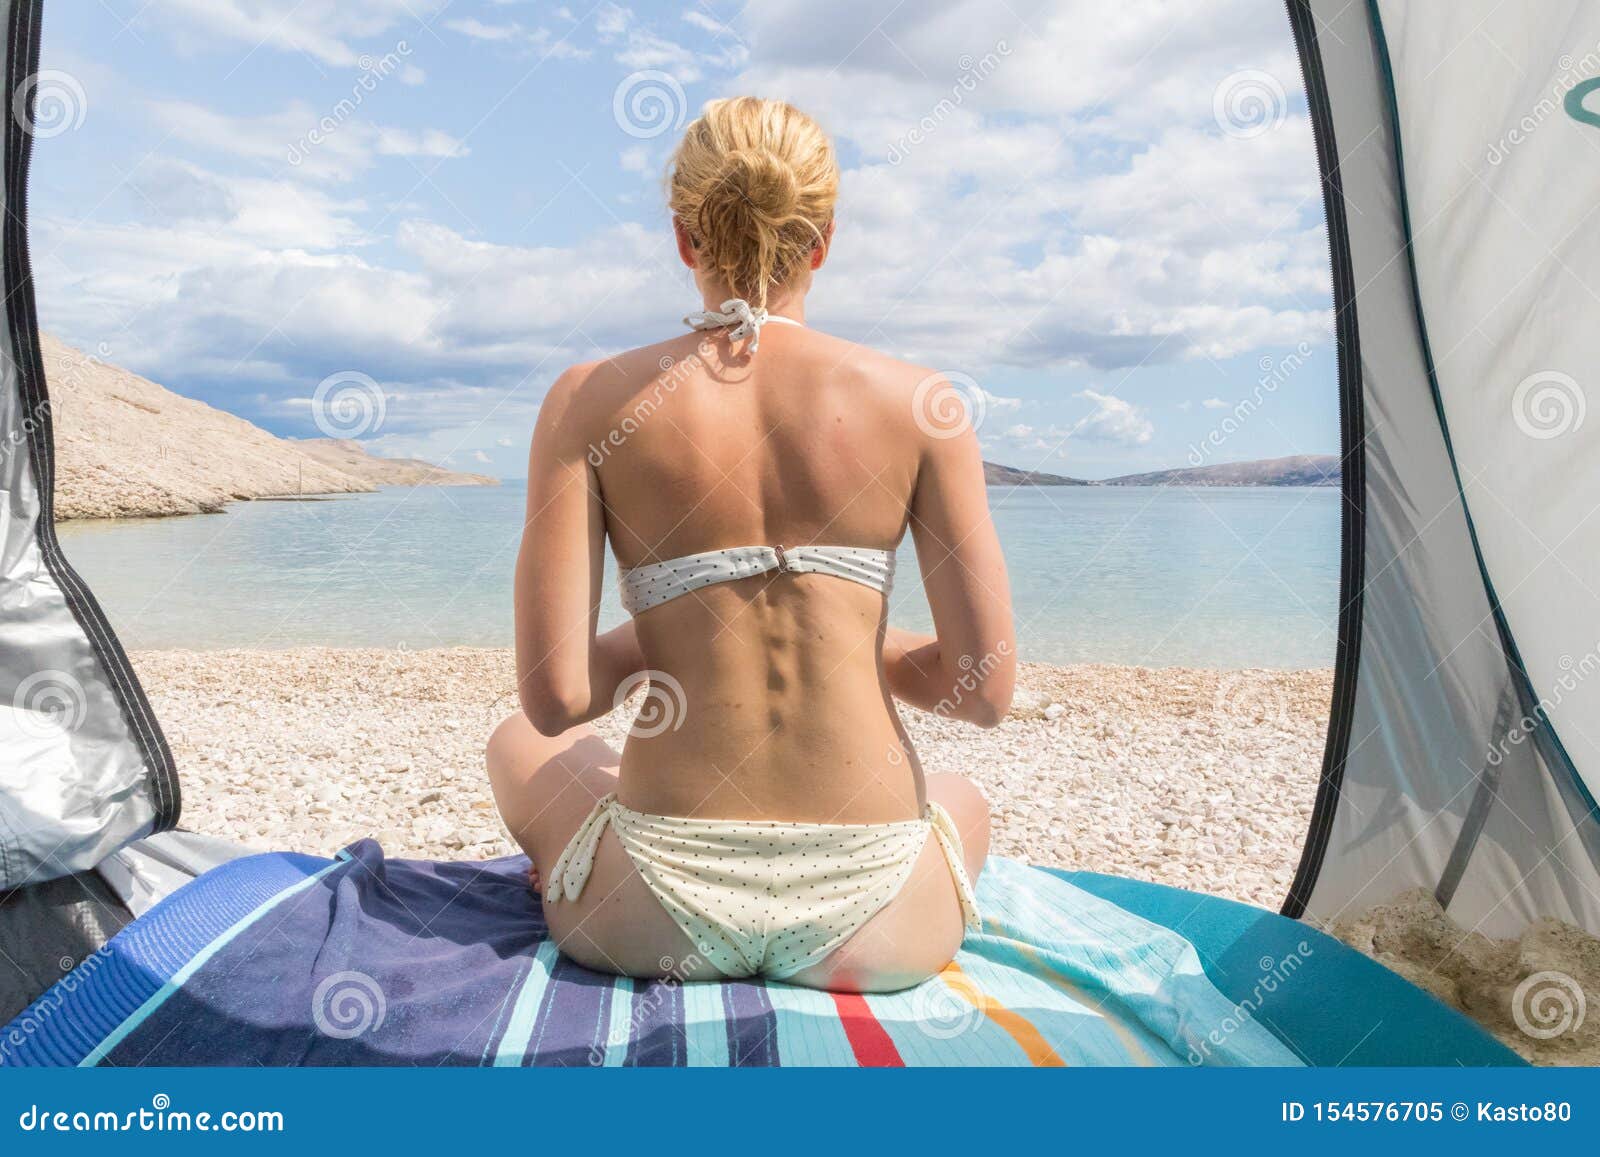 Rear View Of Beautiful Young Caucasian Woman Enjoying Summer Sun On